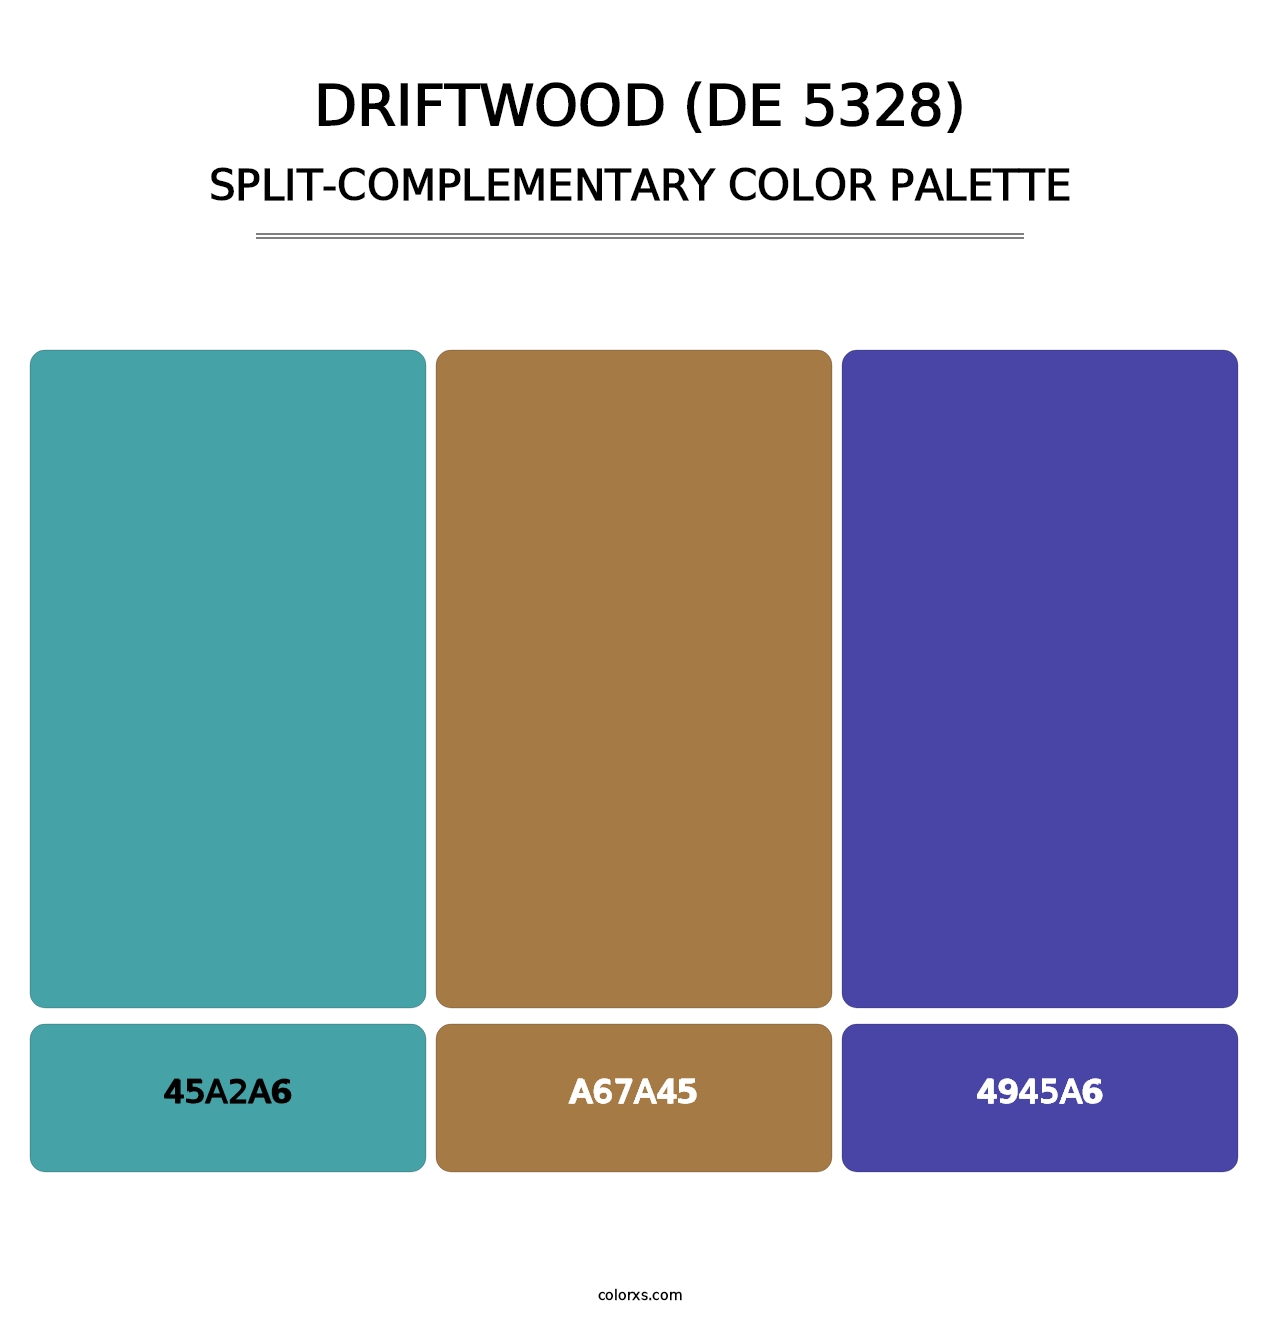 Driftwood (DE 5328) - Split-Complementary Color Palette